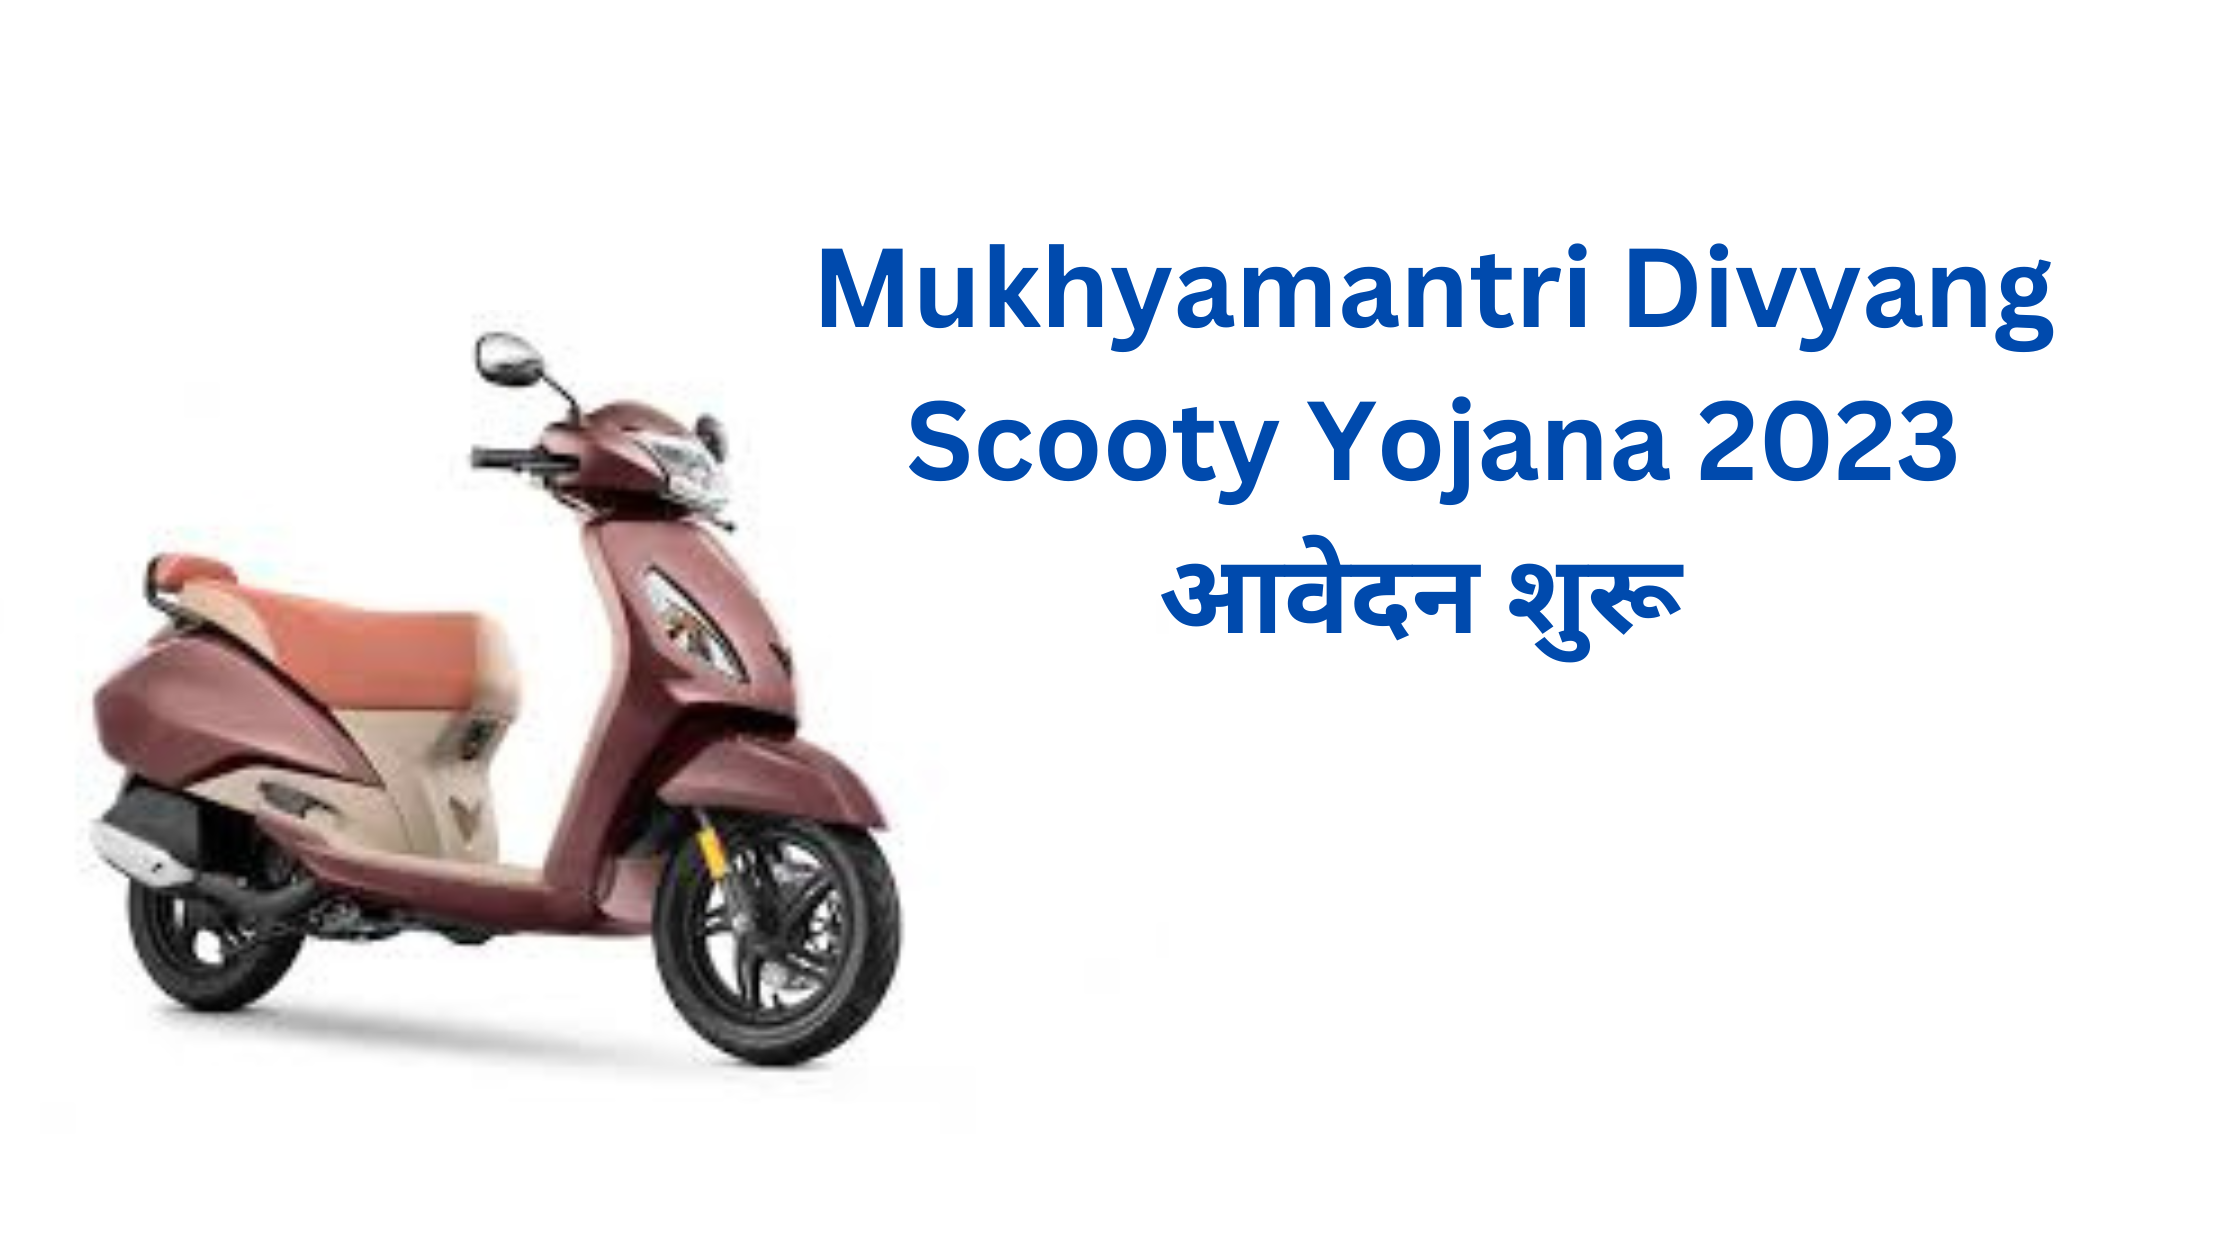 Mukhyamantri Divyang Scooty Yojana 2023 आवेदन शुरू